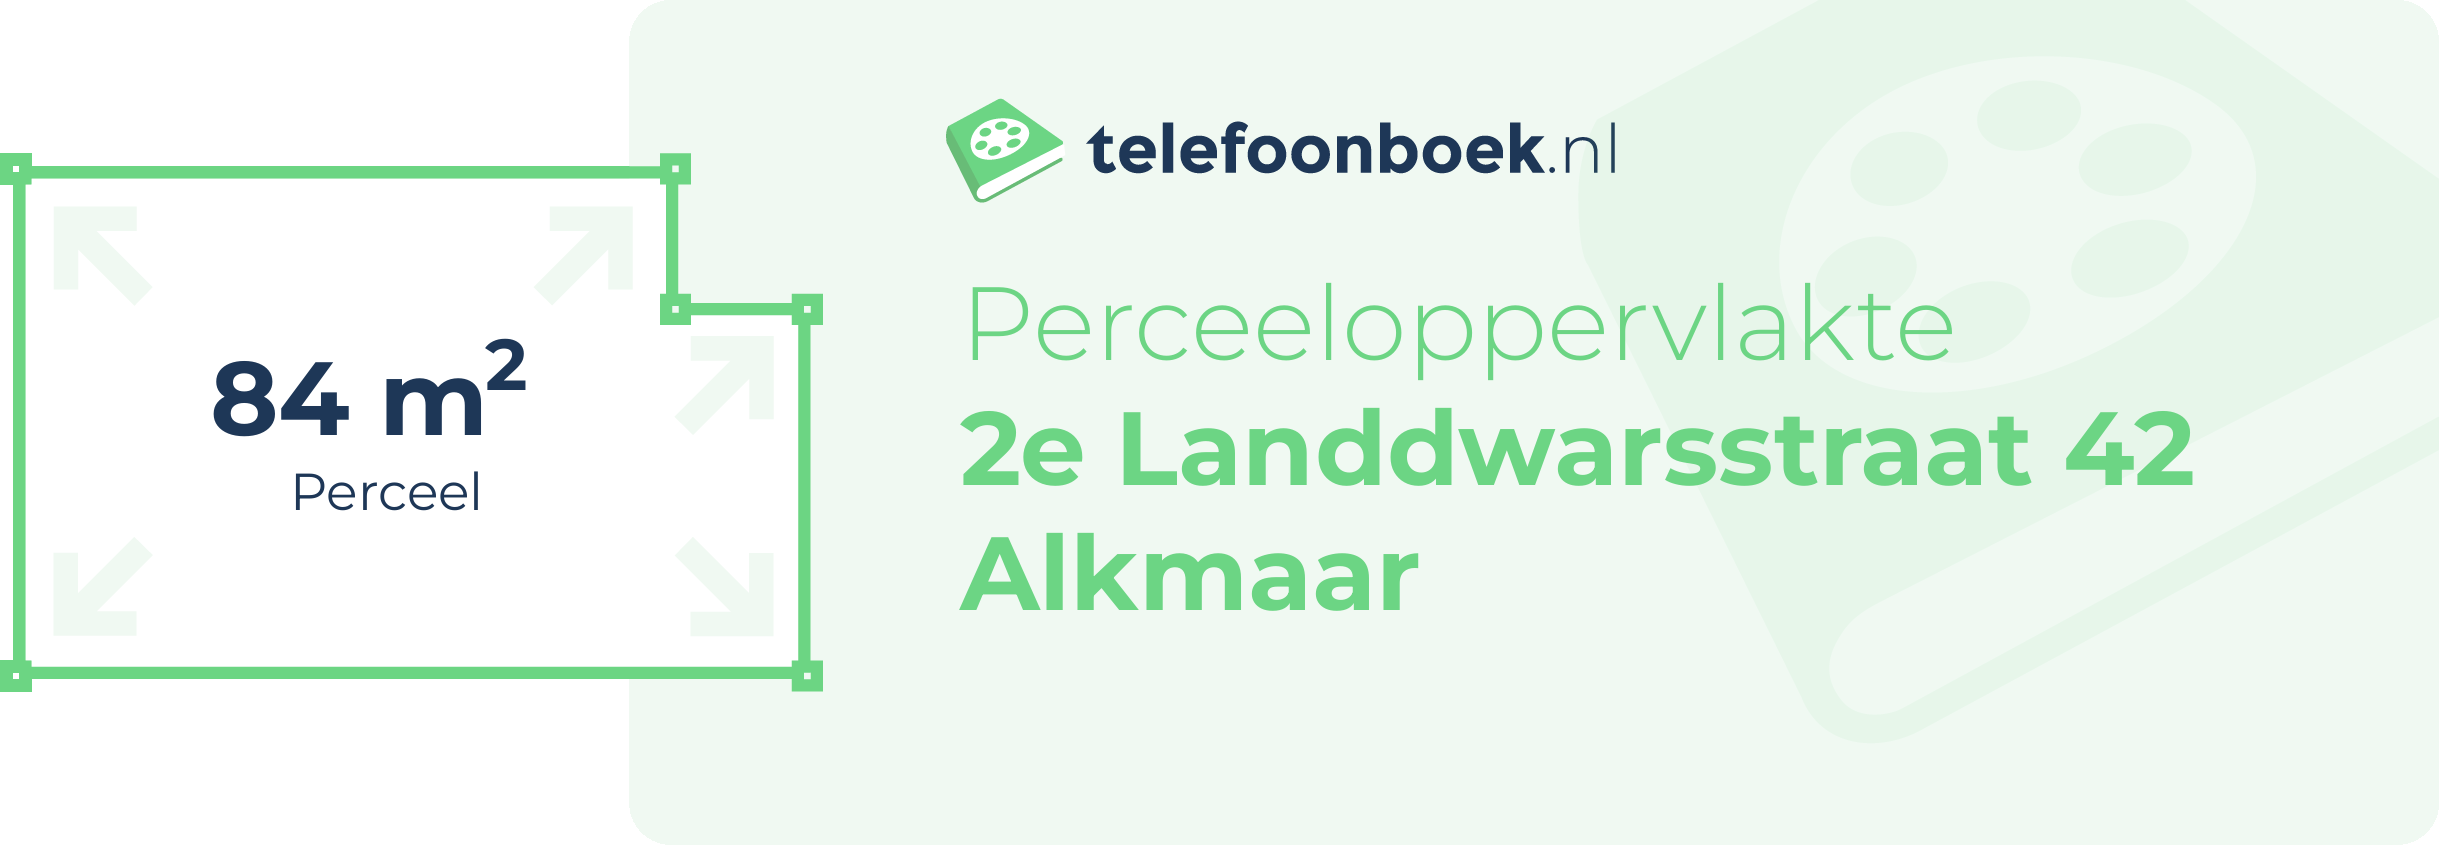 Perceeloppervlakte 2e Landdwarsstraat 42 Alkmaar